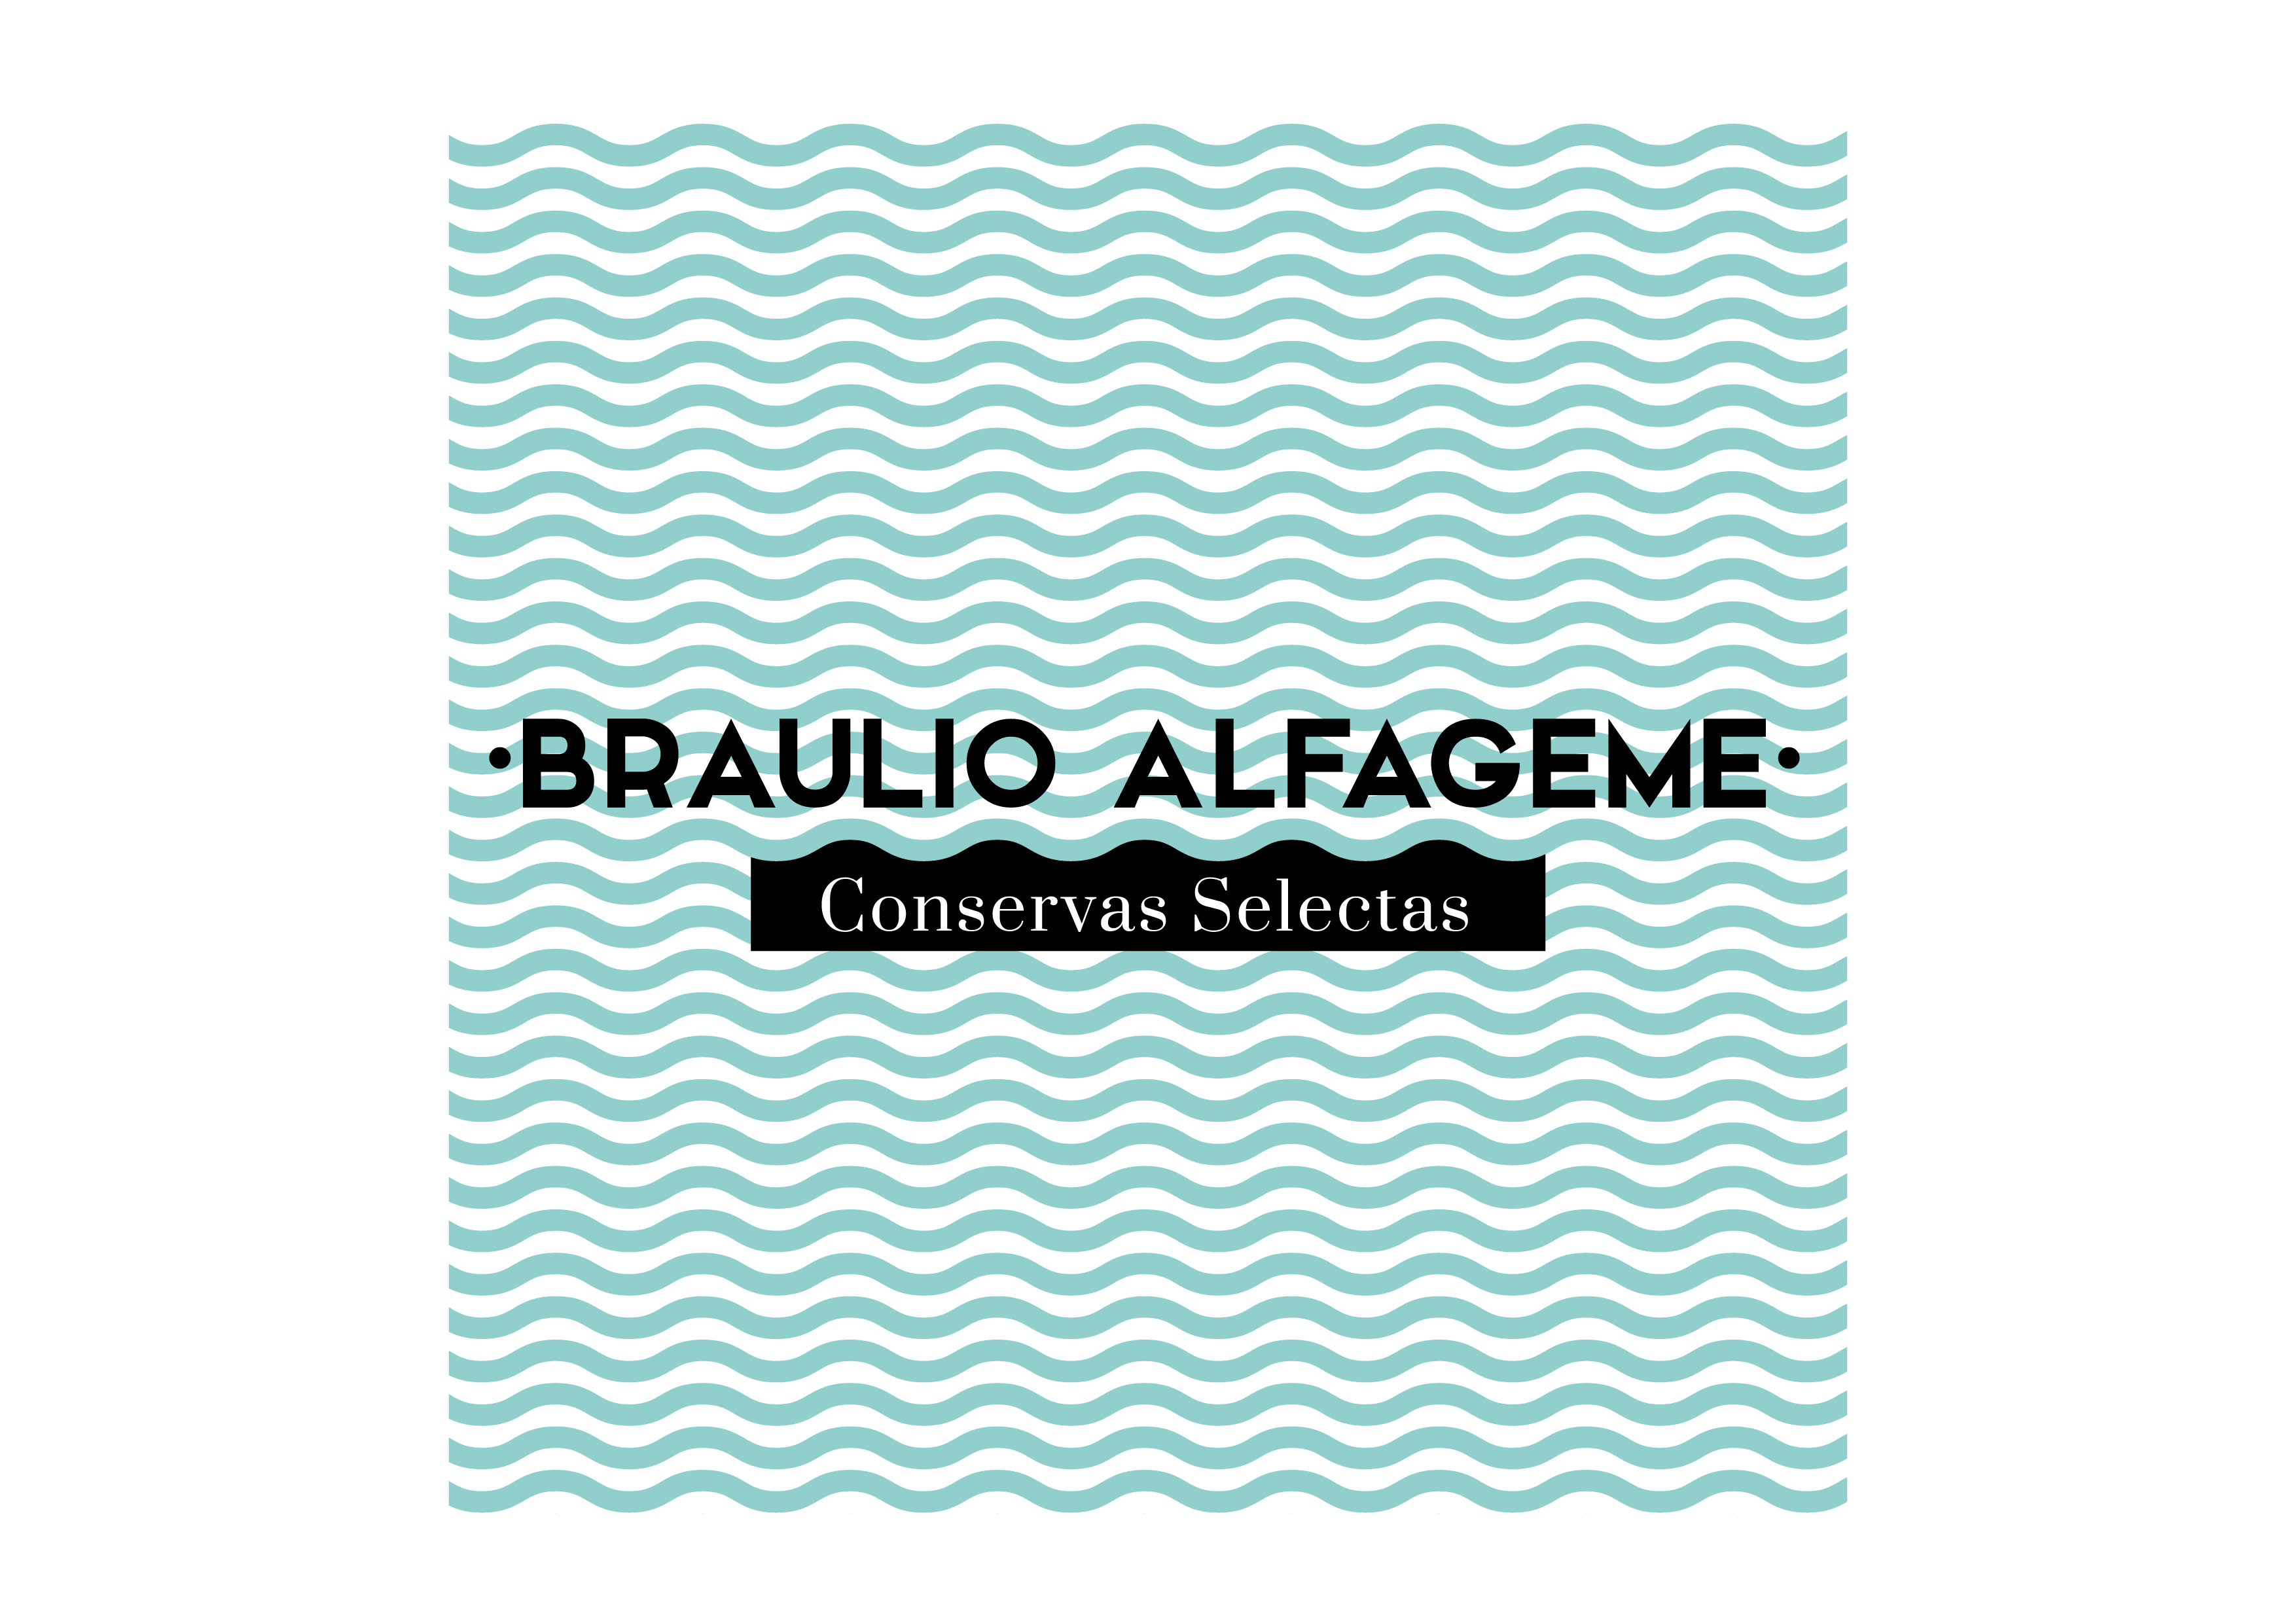 Braulio Alfageme Conservas_Logo ondas.jpg